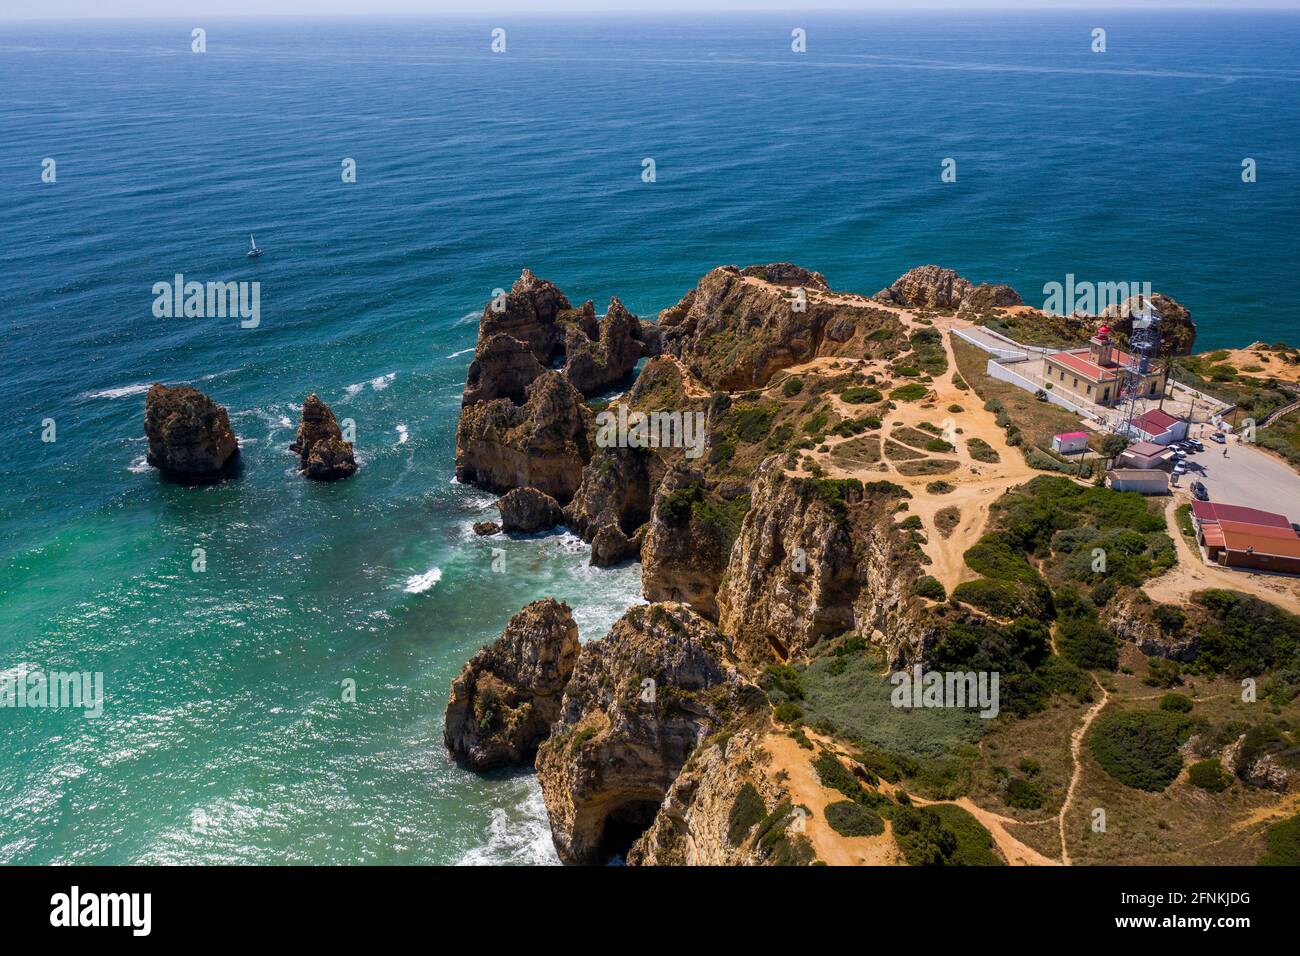 Vue aérienne des falaises de la côte dorée des plages du sud portugais à Lagos, Algarve, Portugal. Plage de Camilo et Ponta da Piedade. Banque D'Images